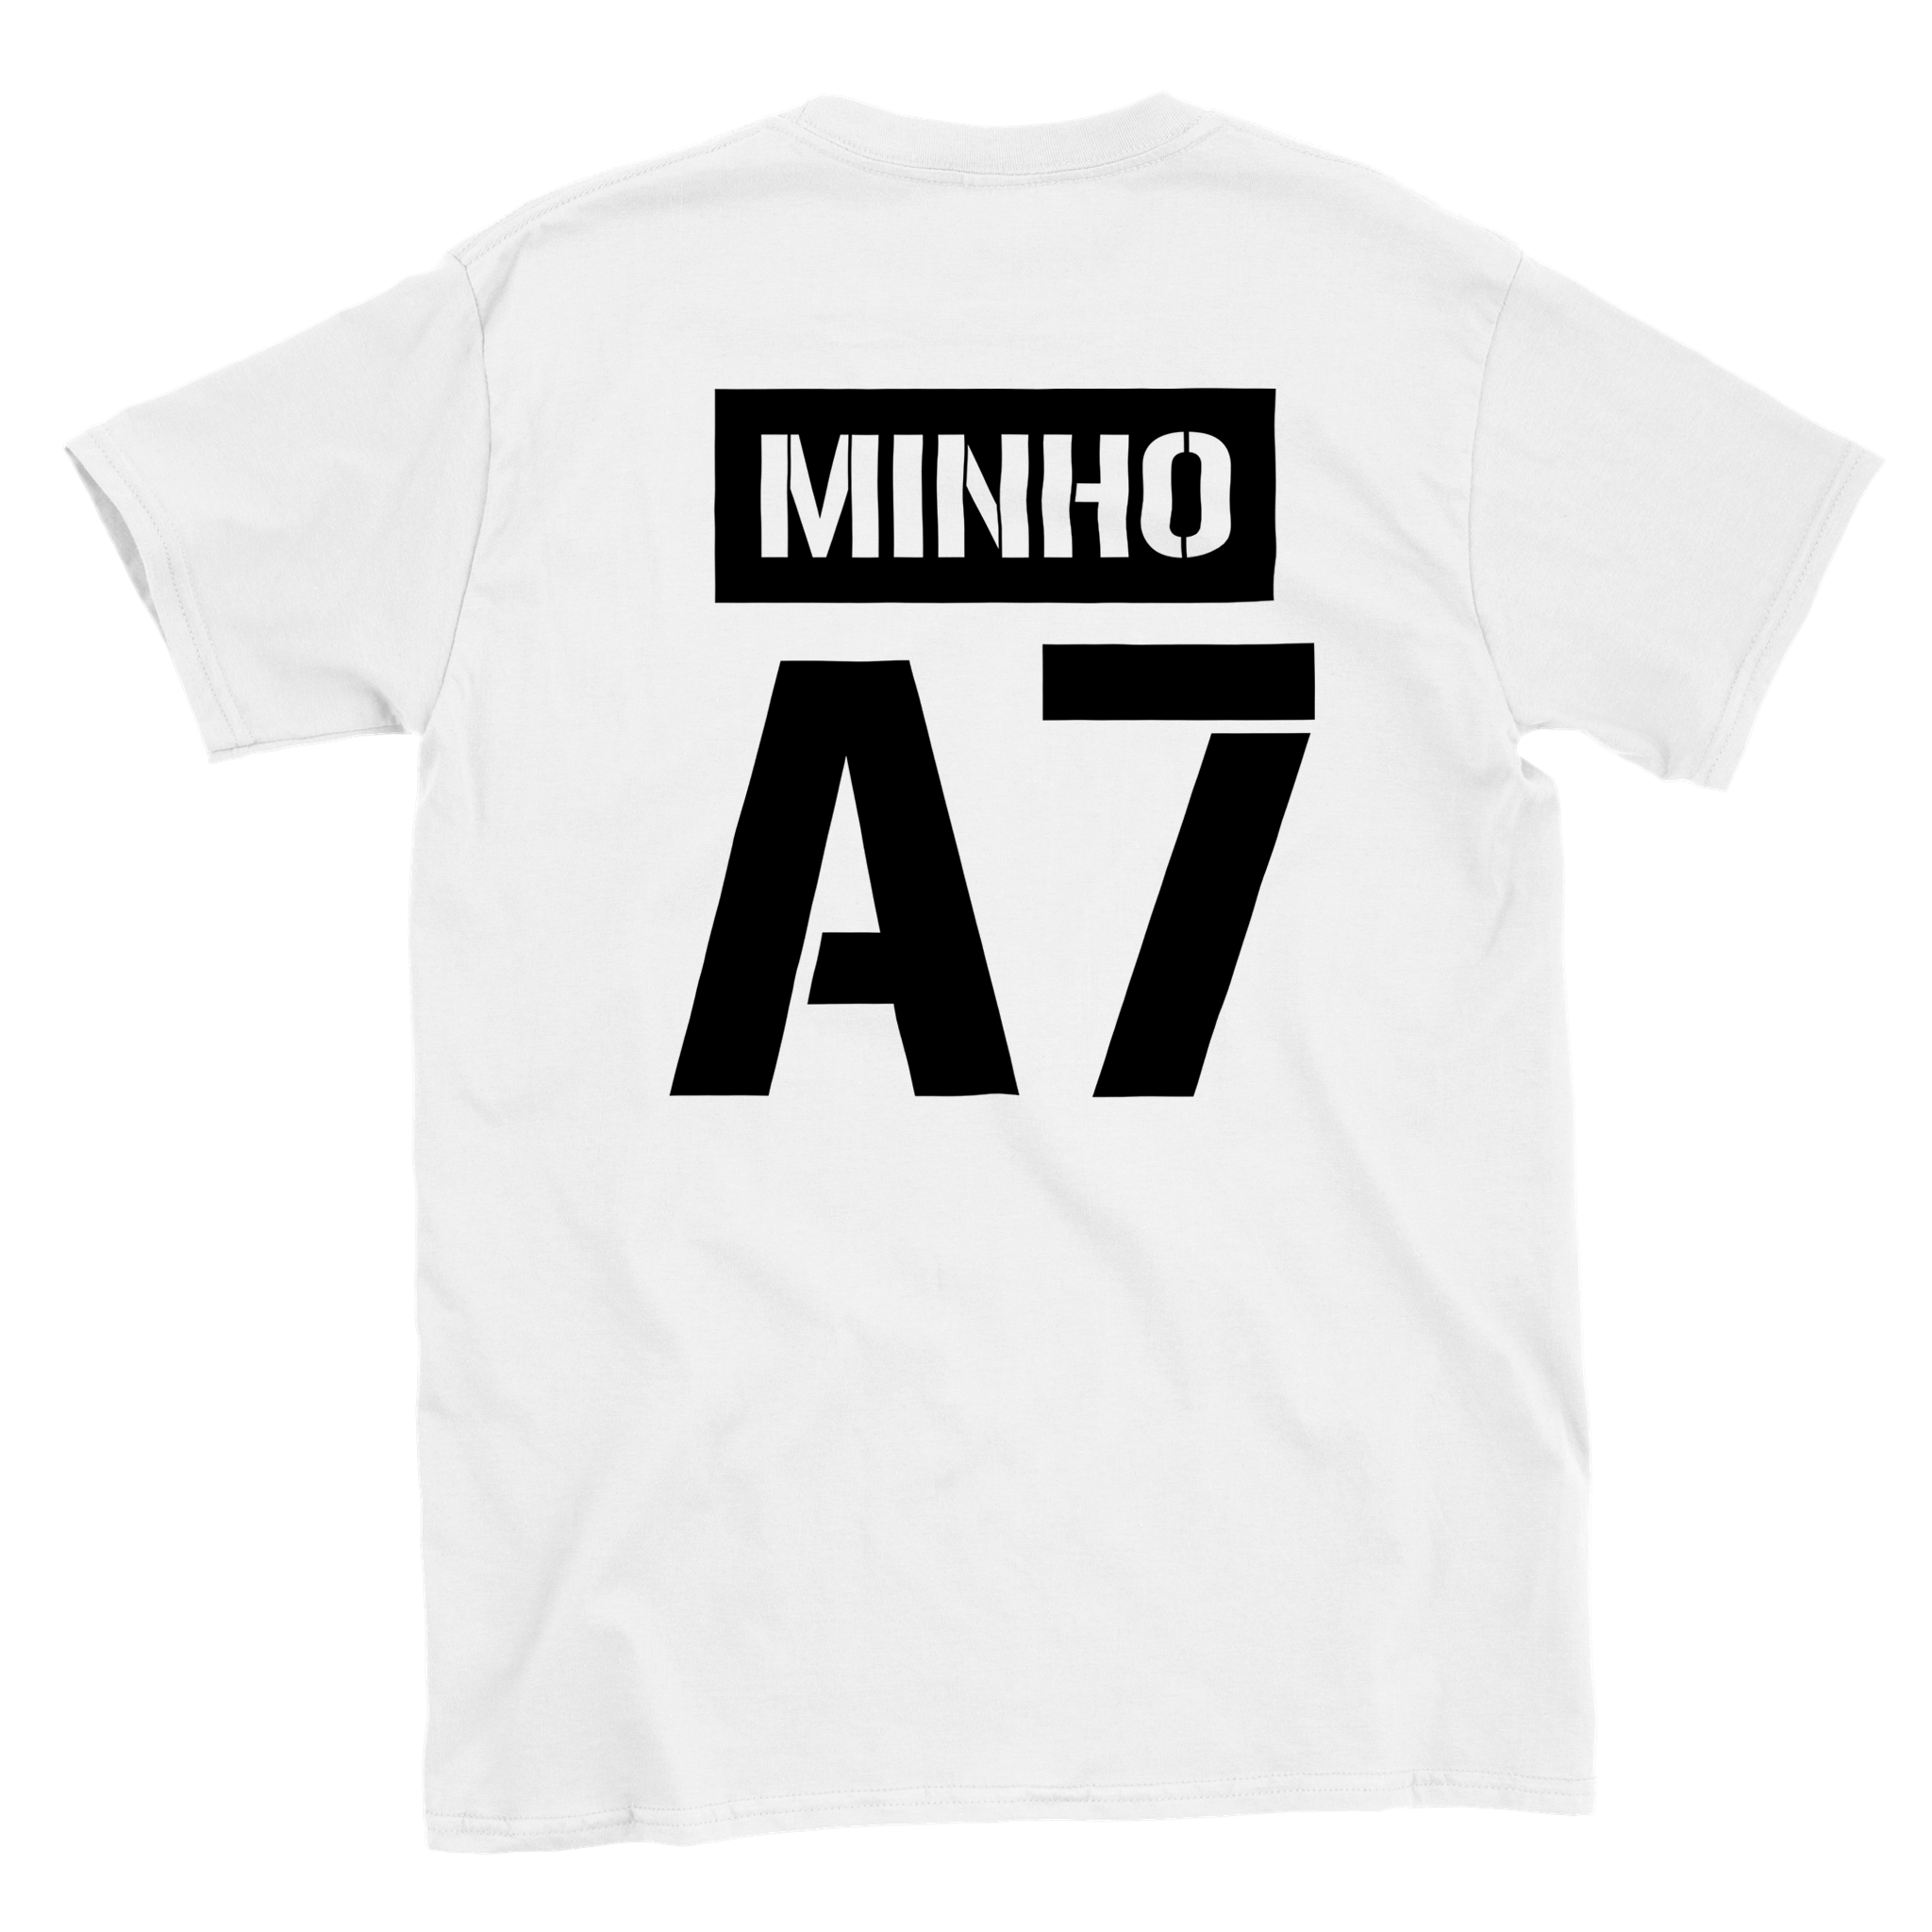 T-shirt Minho A7